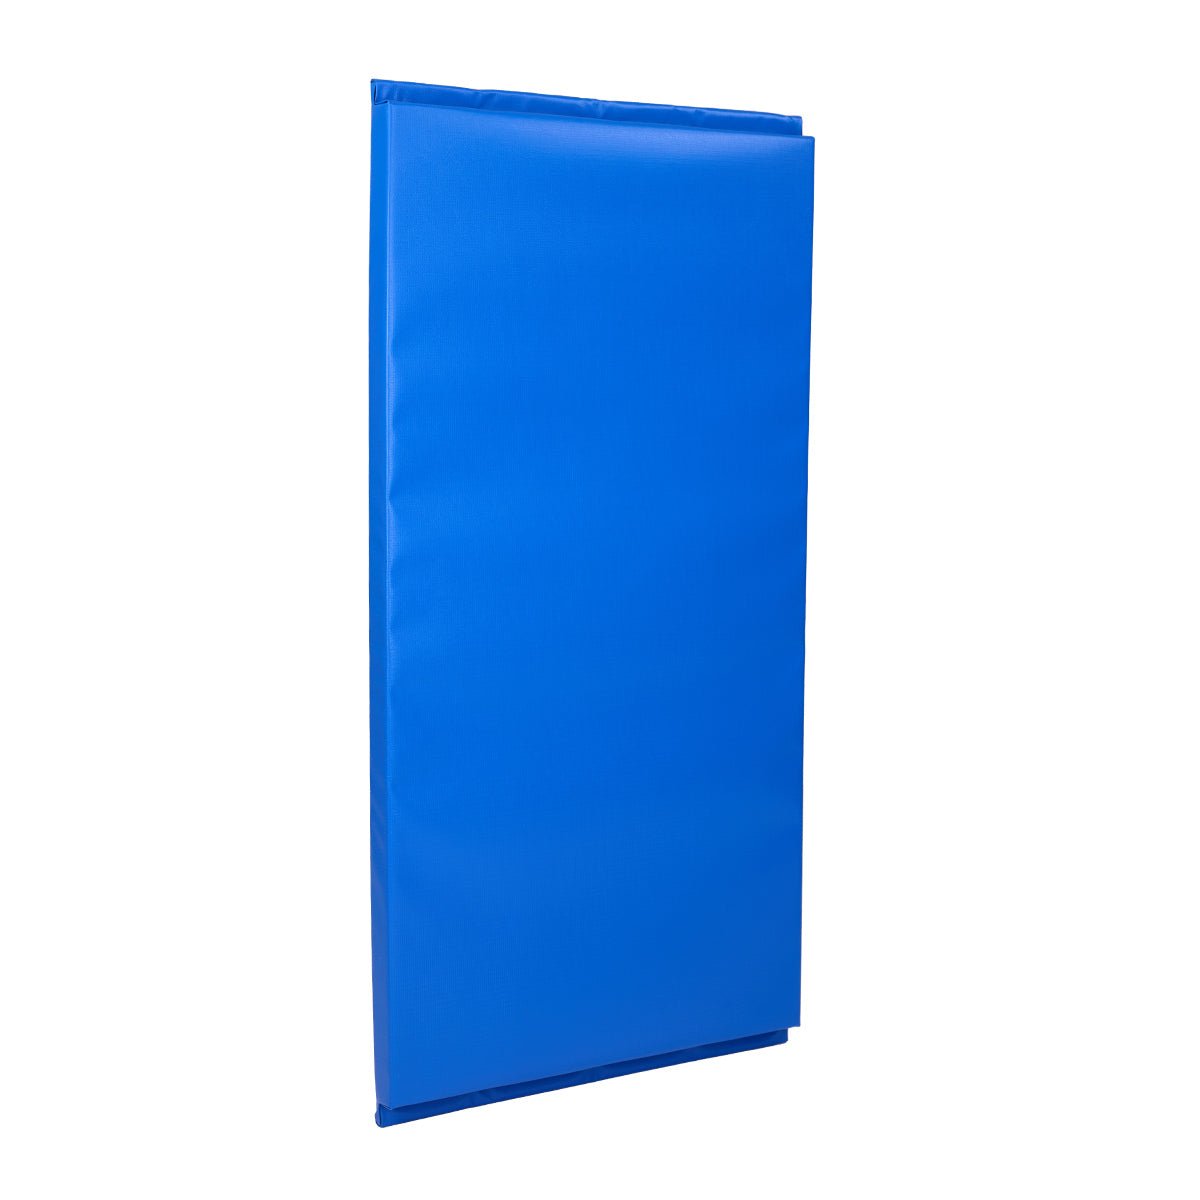 Wall Pad 2' x 4' Blue